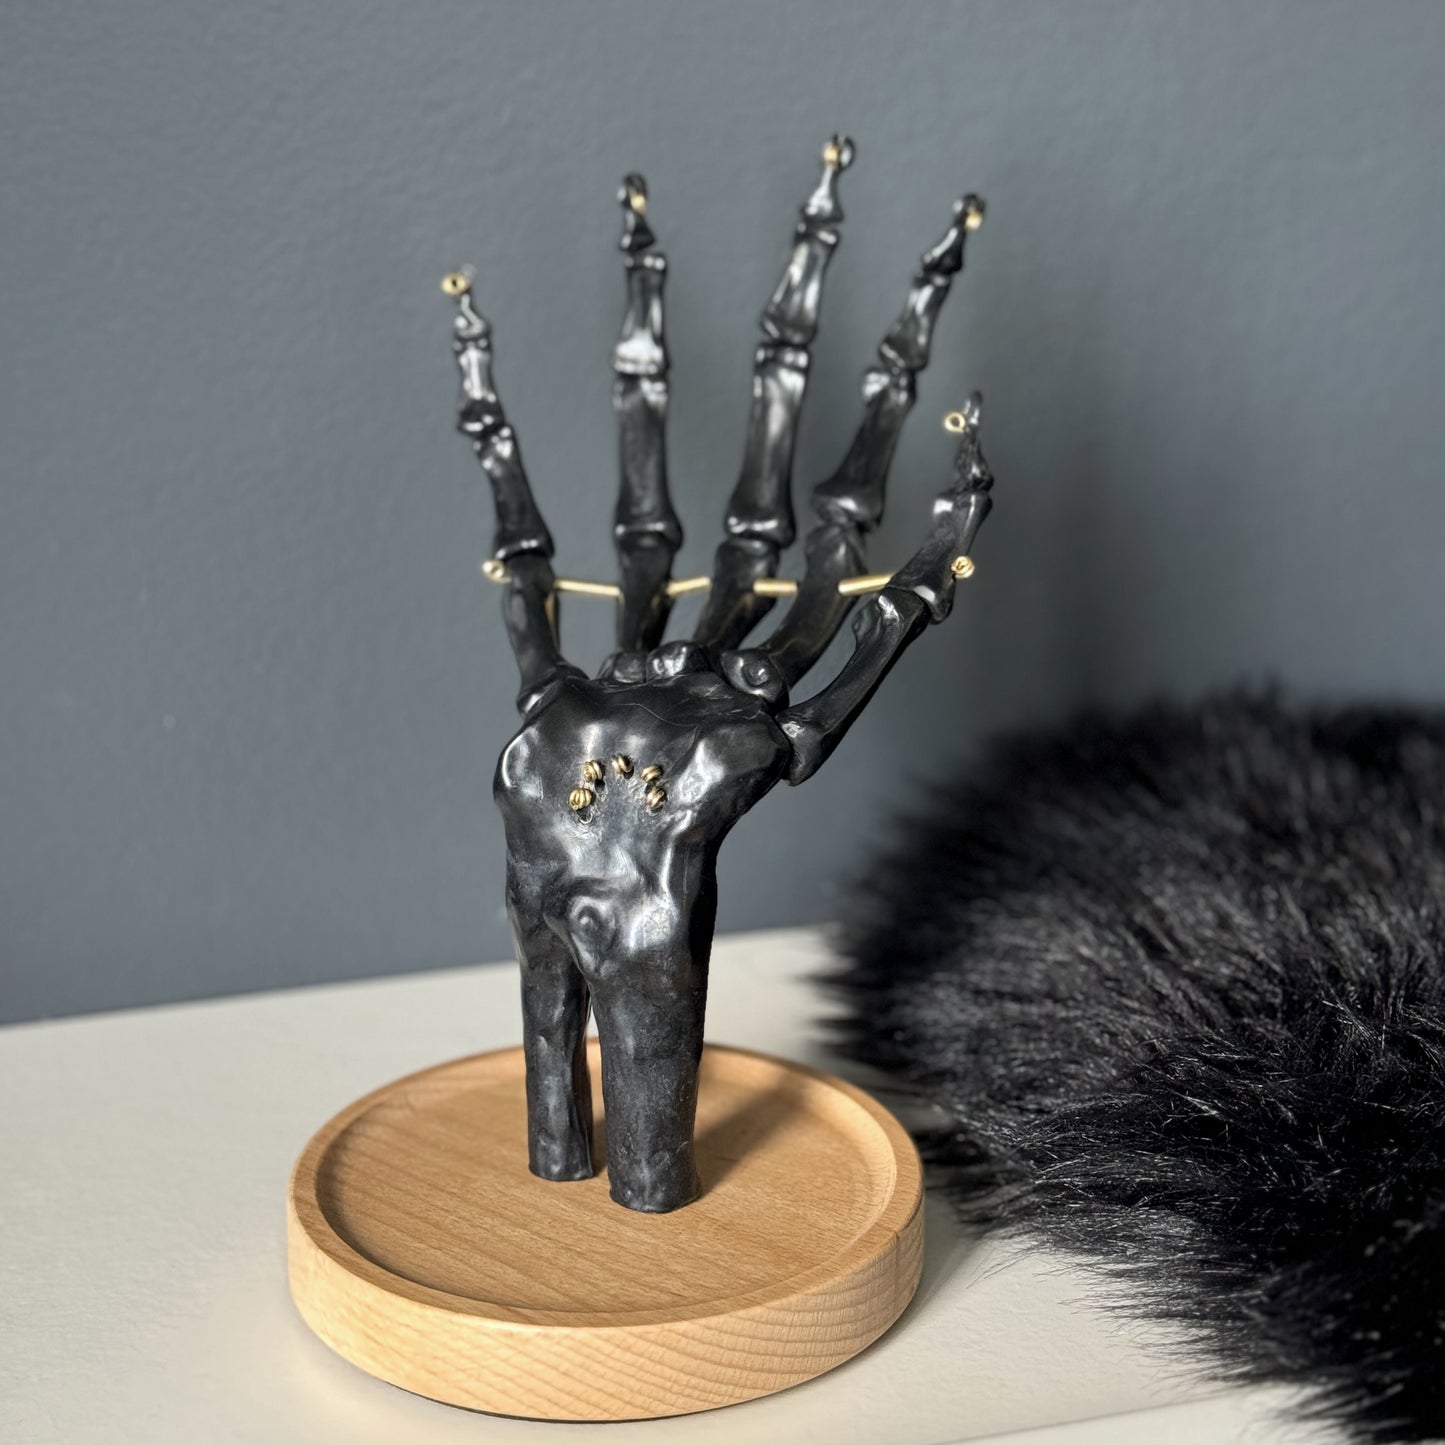 Décoration design doigt d'honneur – Darkmedusa